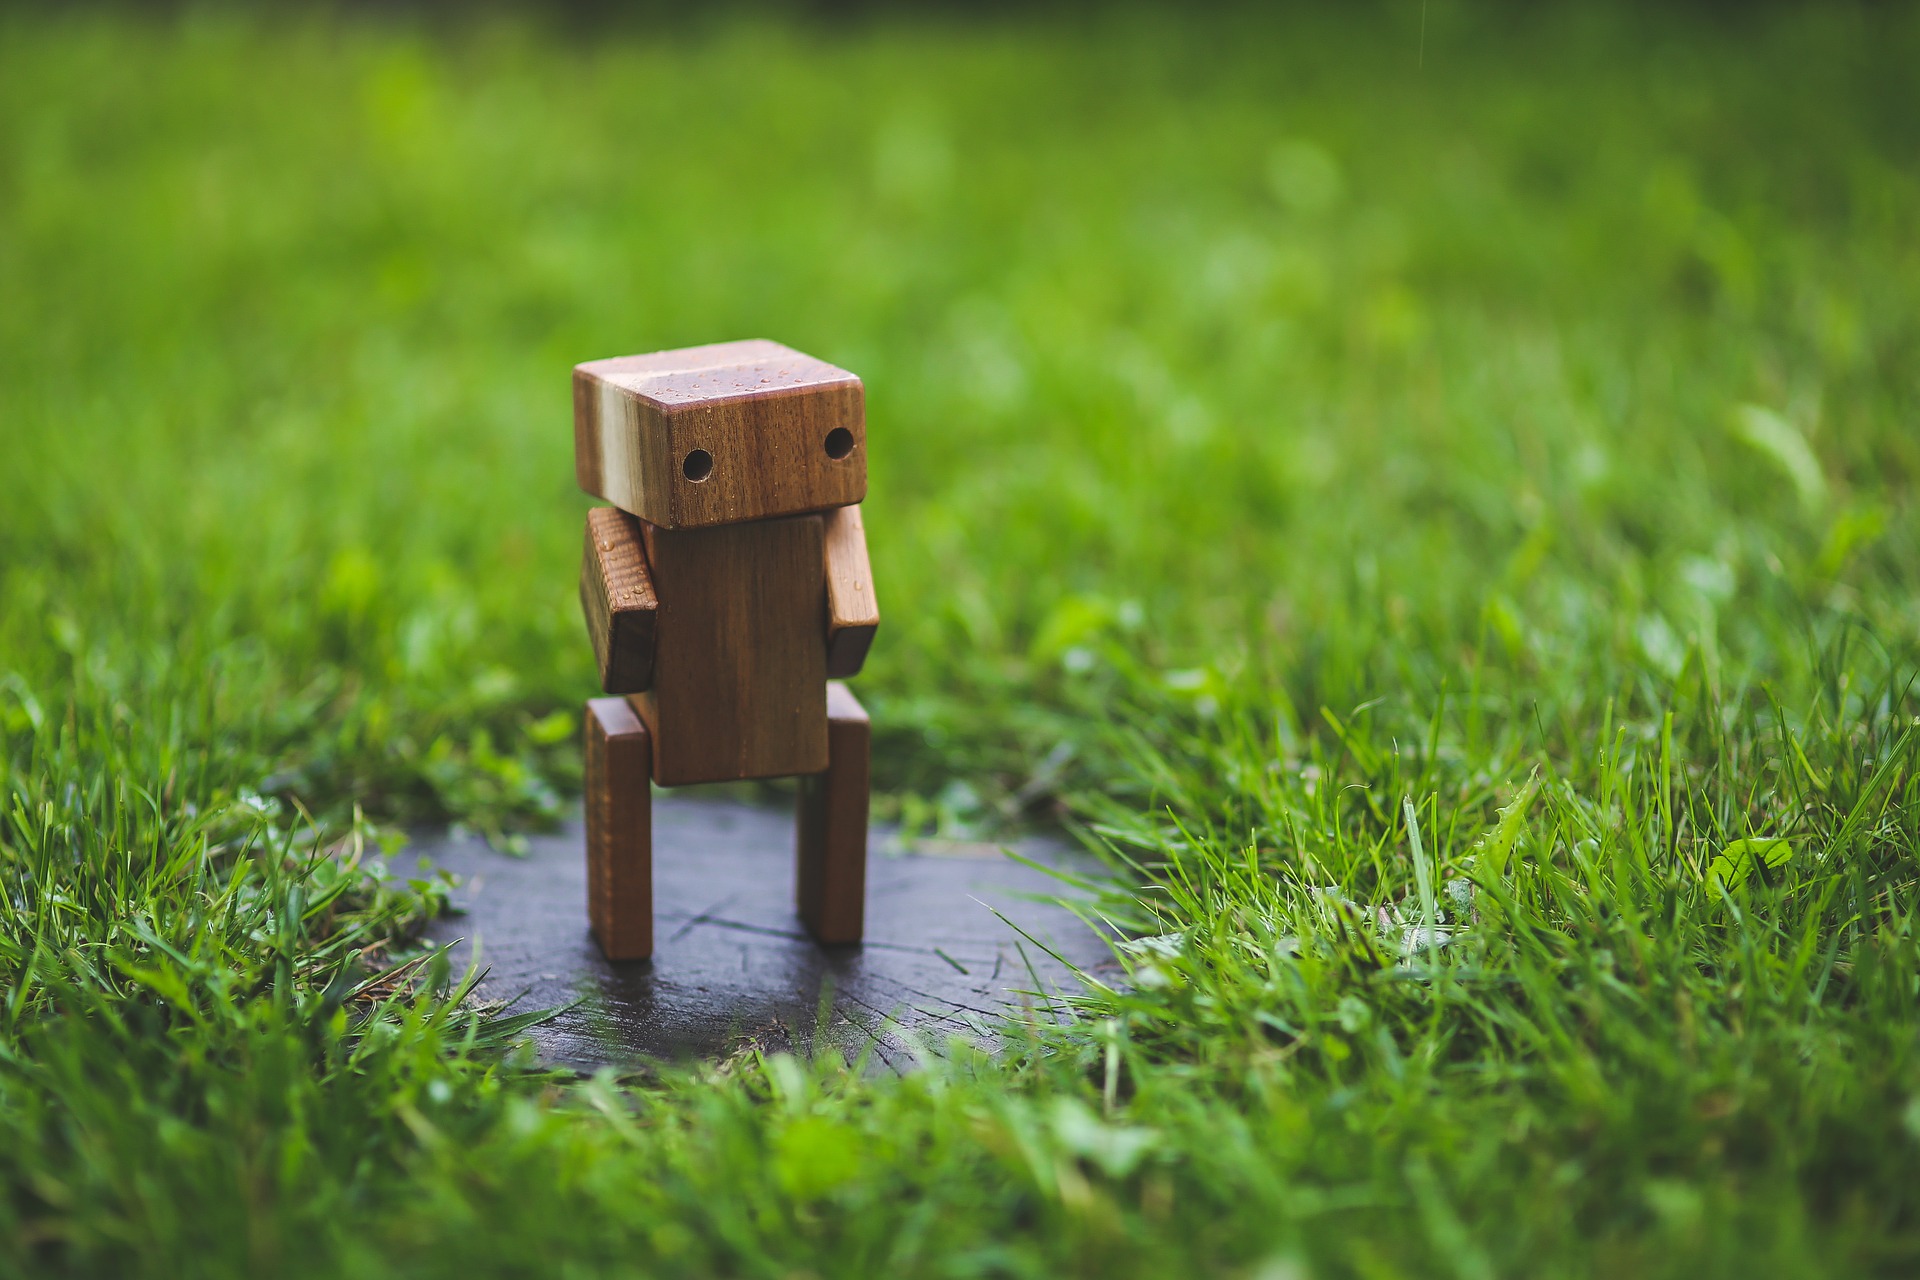 a miniature wooden robot standing on grass